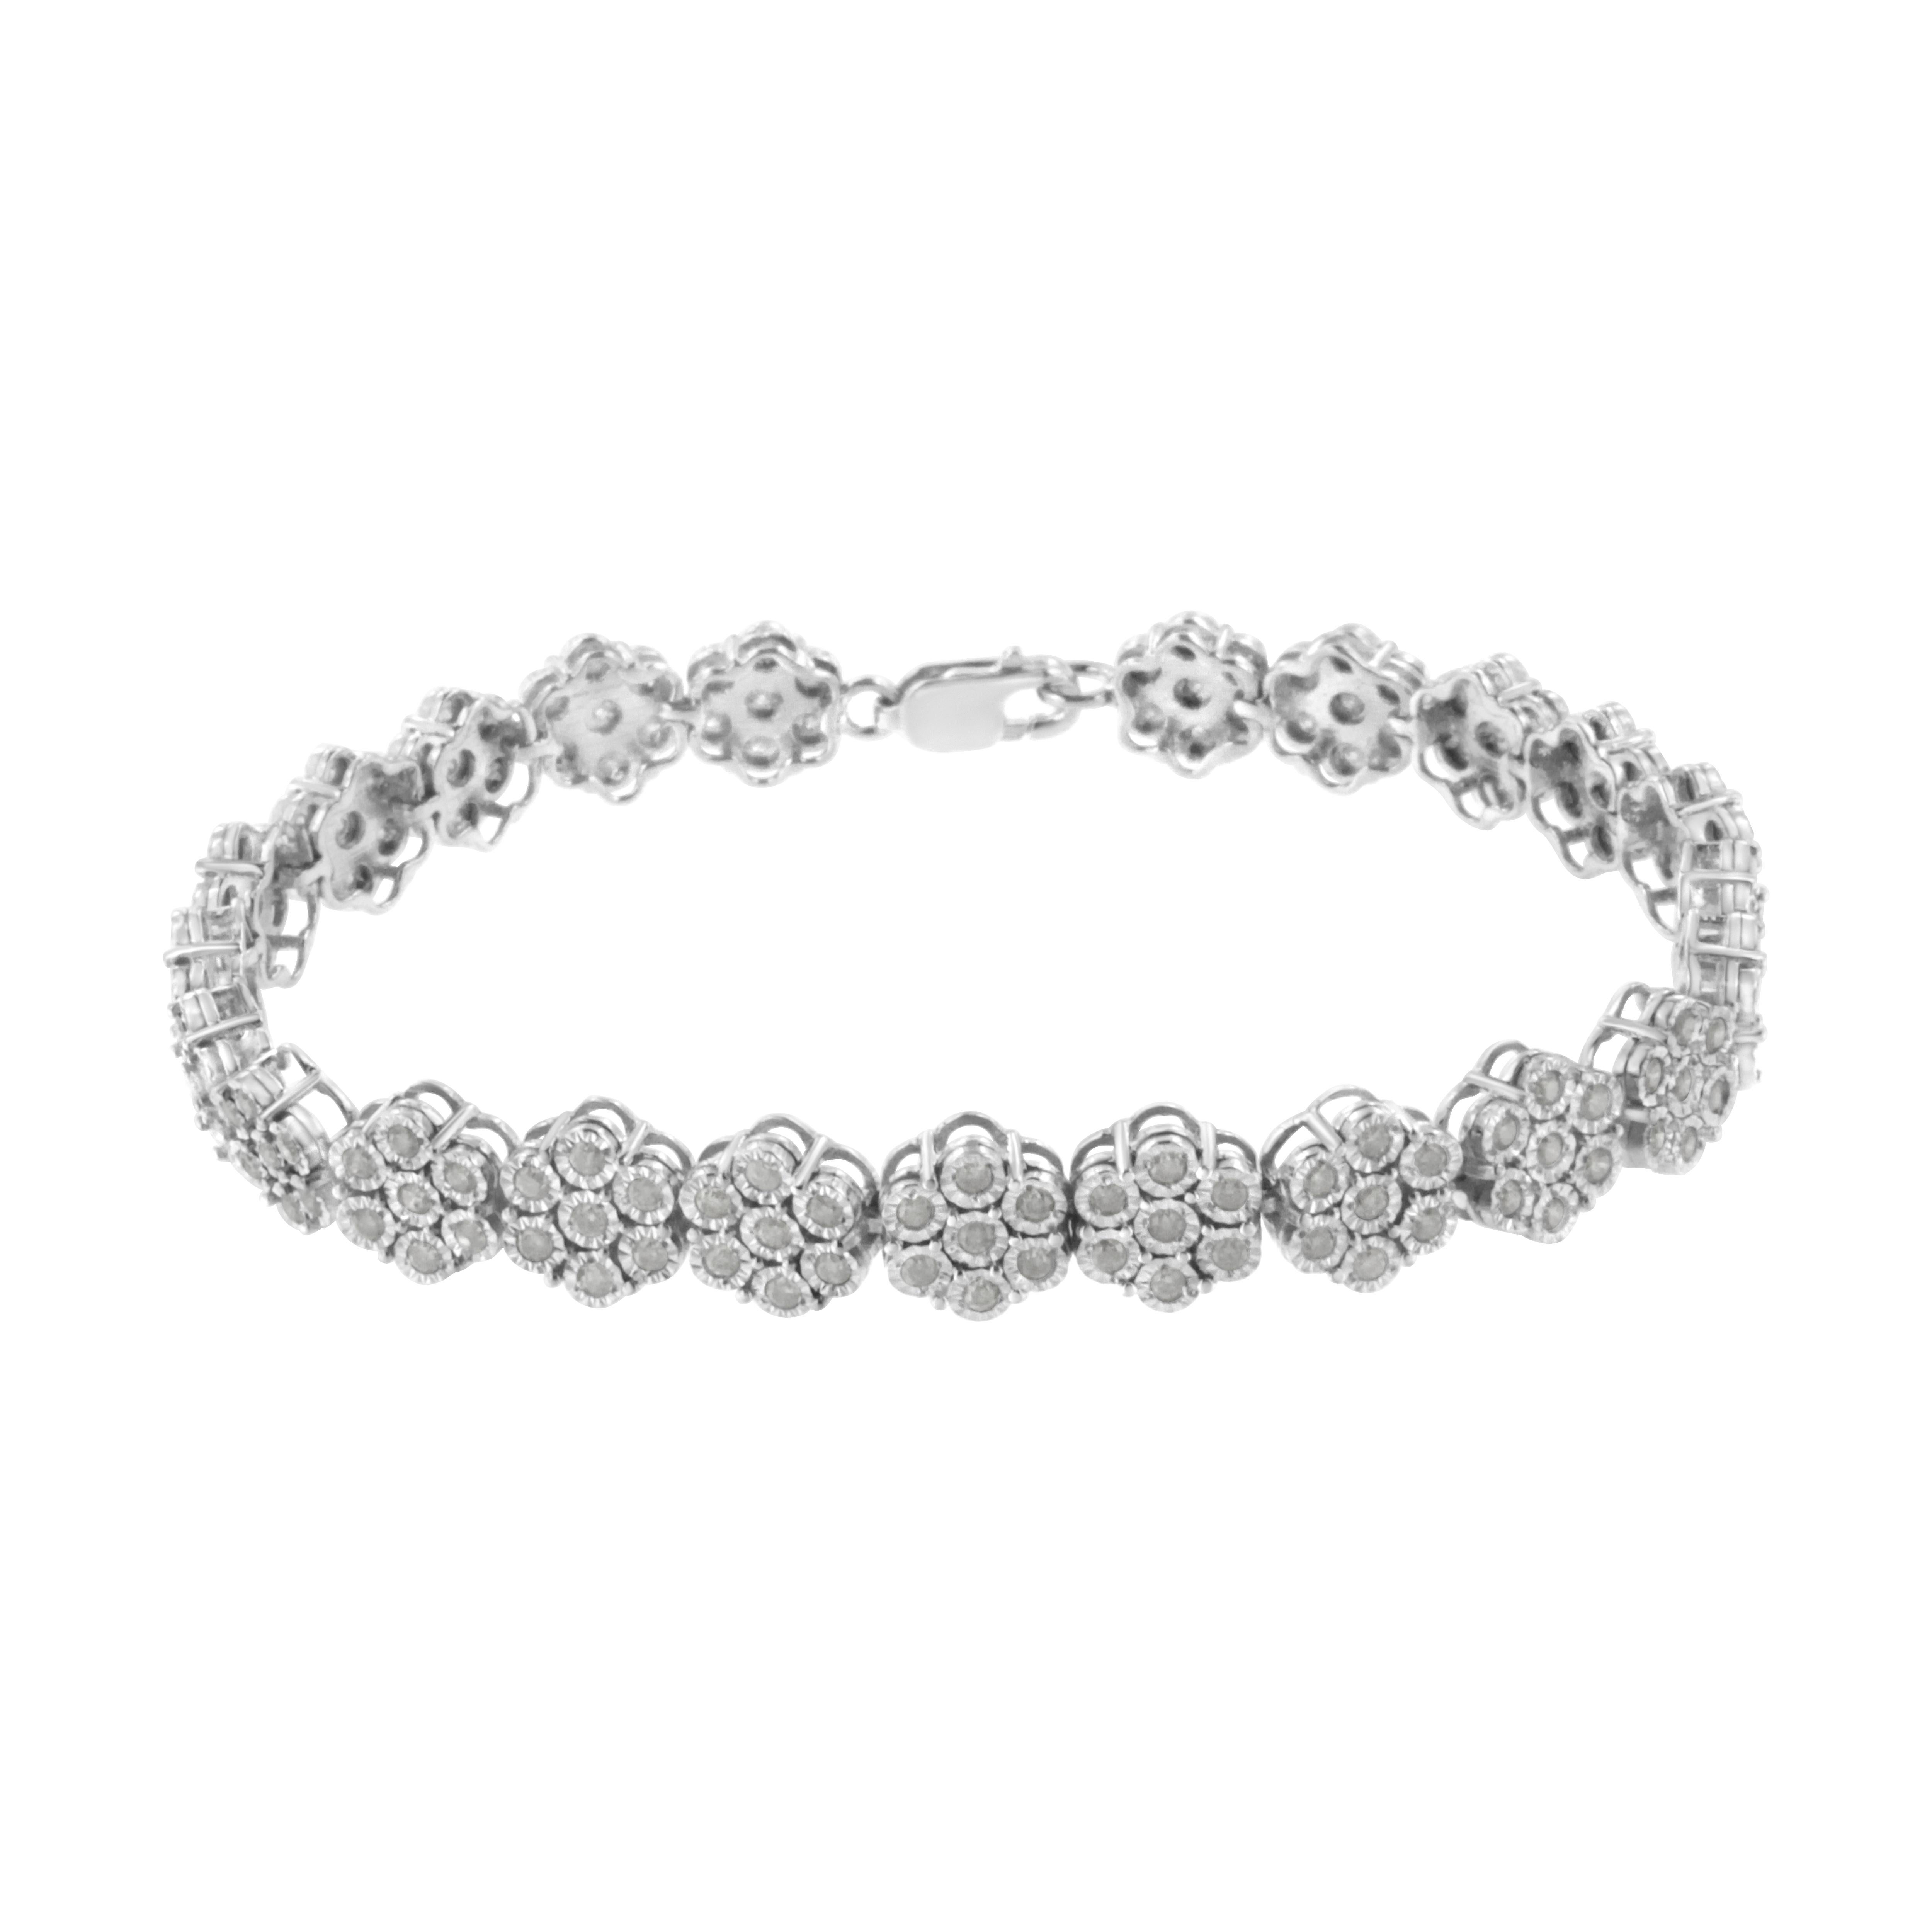 Ce magnifique bracelet à maillons en forme de fleur est fabriqué en argent sterling et présente des diamants de 2 carats TDW. Cent soixante et un diamants ronds de qualité promo scintillent dans ce modèle. Sept diamants sertis par miracle créent